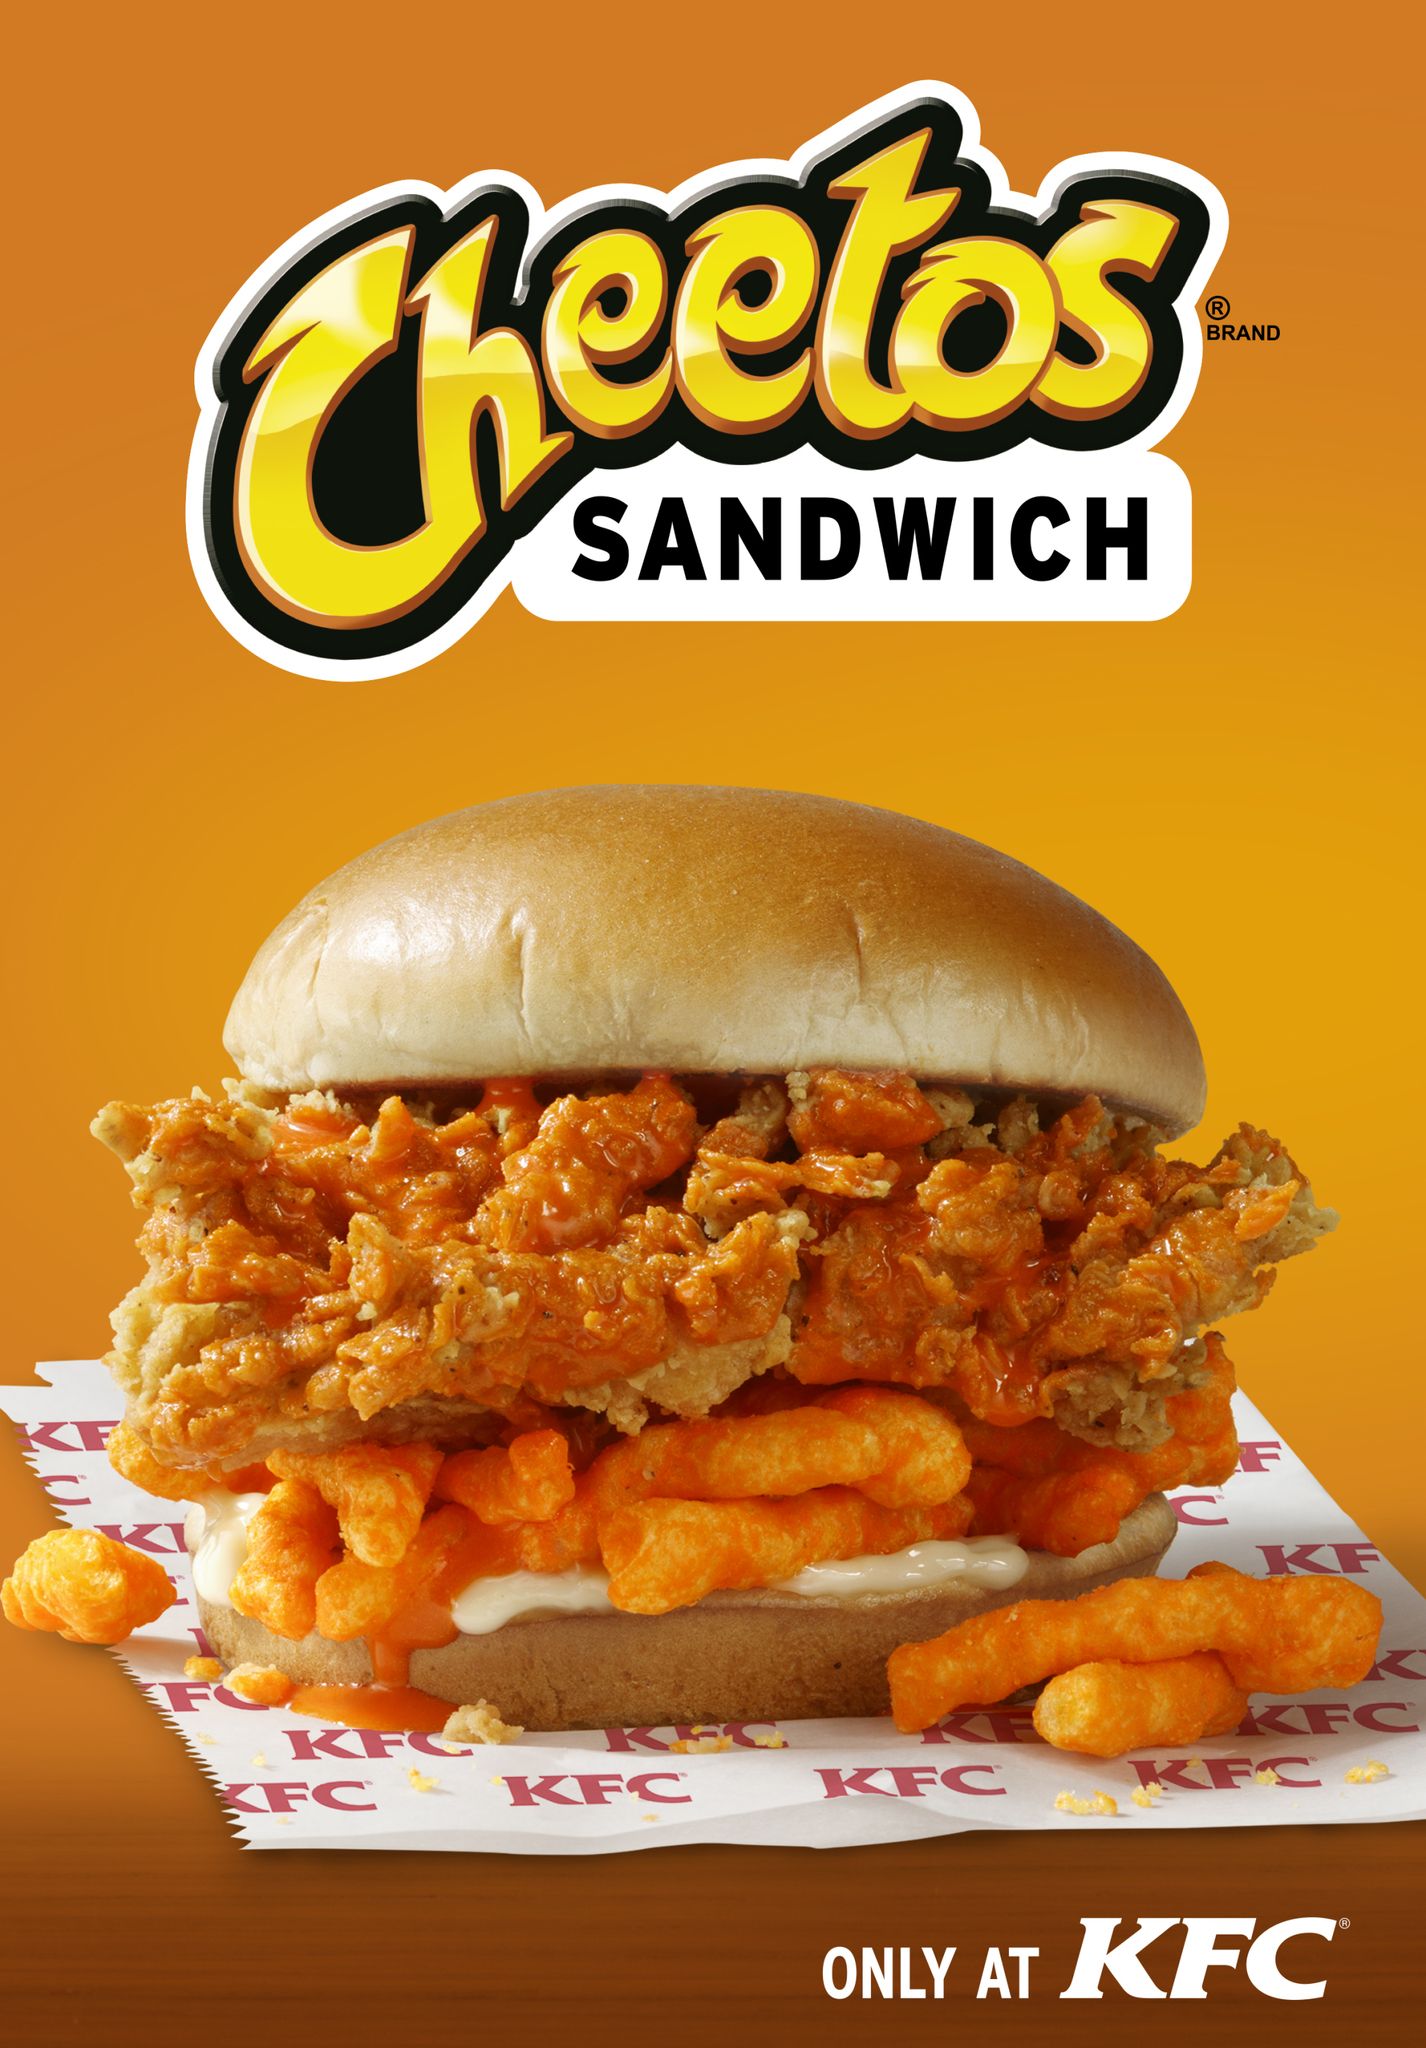 cheetos-sandwich-1548795259.jpg